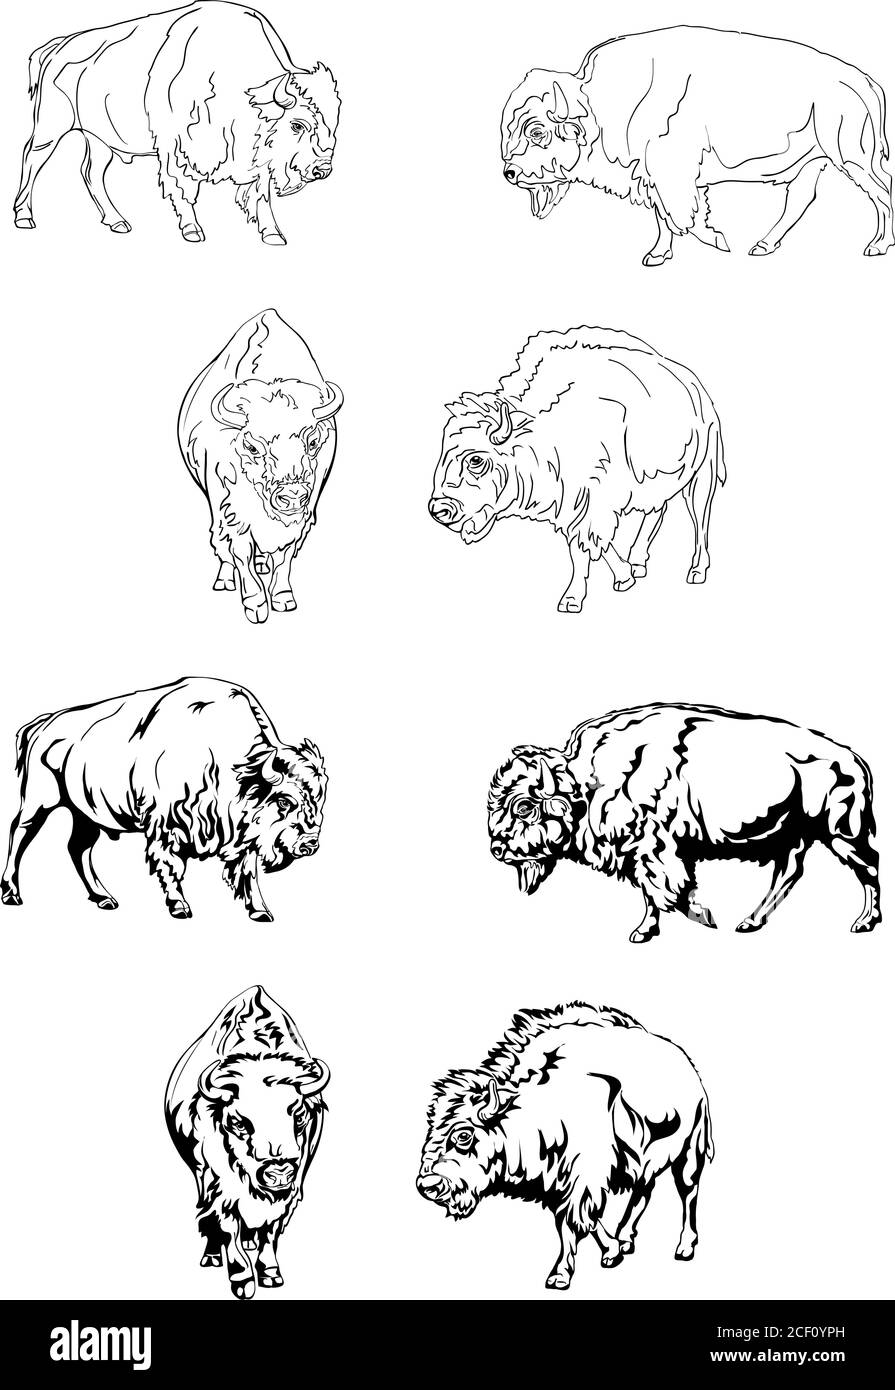 bisonte, búfalo, color, safari bisonte herbívoro, pradera, reserva, cuerno, américa, grande, blanco, toro, muelle, salvaje, animal, salvaje, animales, cabeza Ilustración del Vector